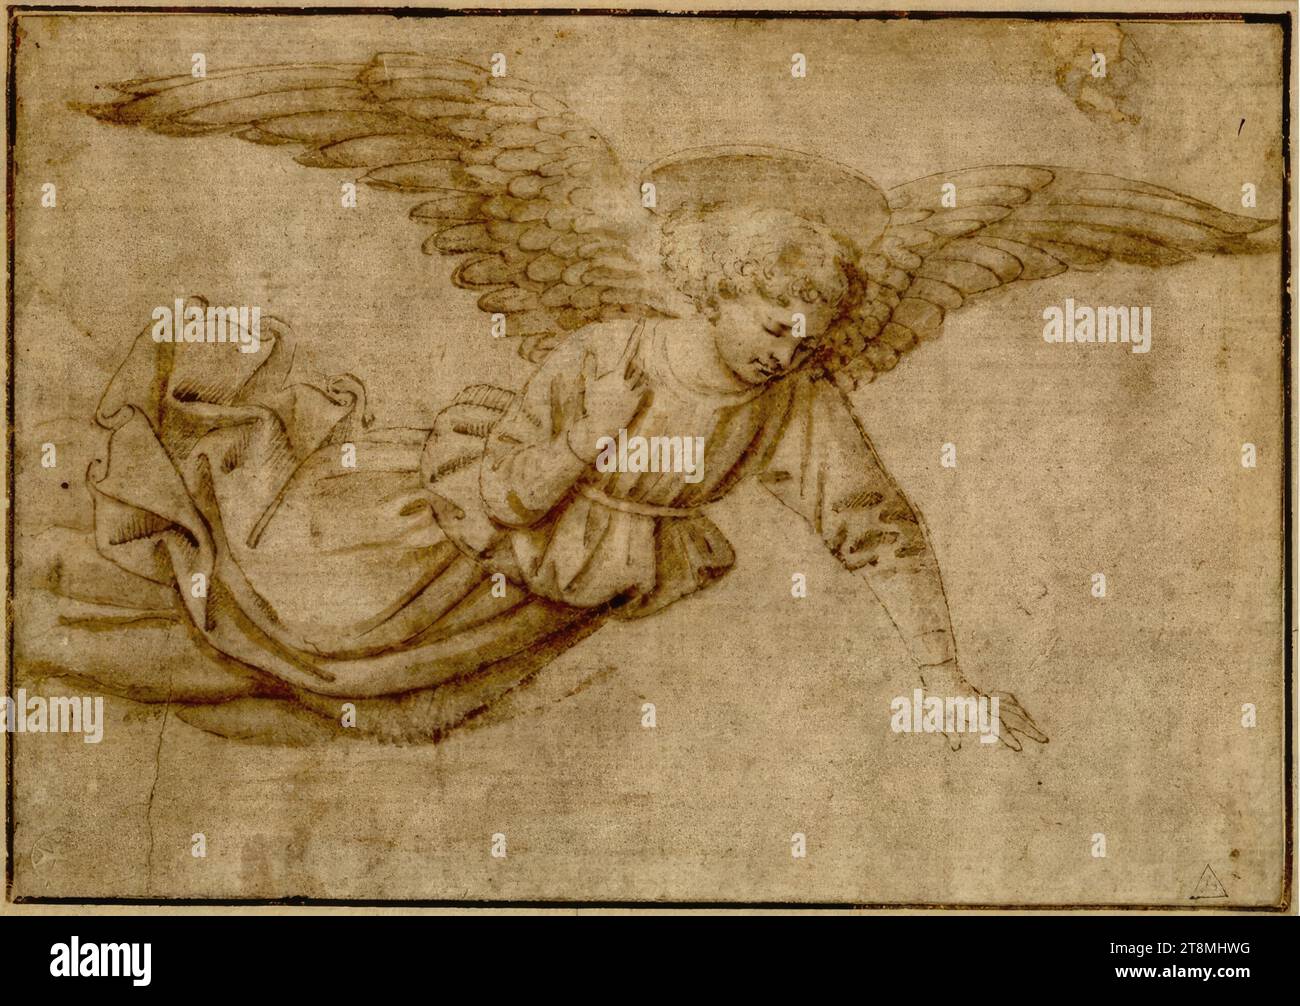 Un angelo si libra verso destra con ali sparse e mano sinistra tesa, Domenico (Italia, 1417-1491), disegno, penna, inchiostro, lavaggio, 11,8 x 17,9 cm, r.r. Lagoy; l.b. fregio; l.b. duca Alberto di Sassonia-Teschen Foto Stock